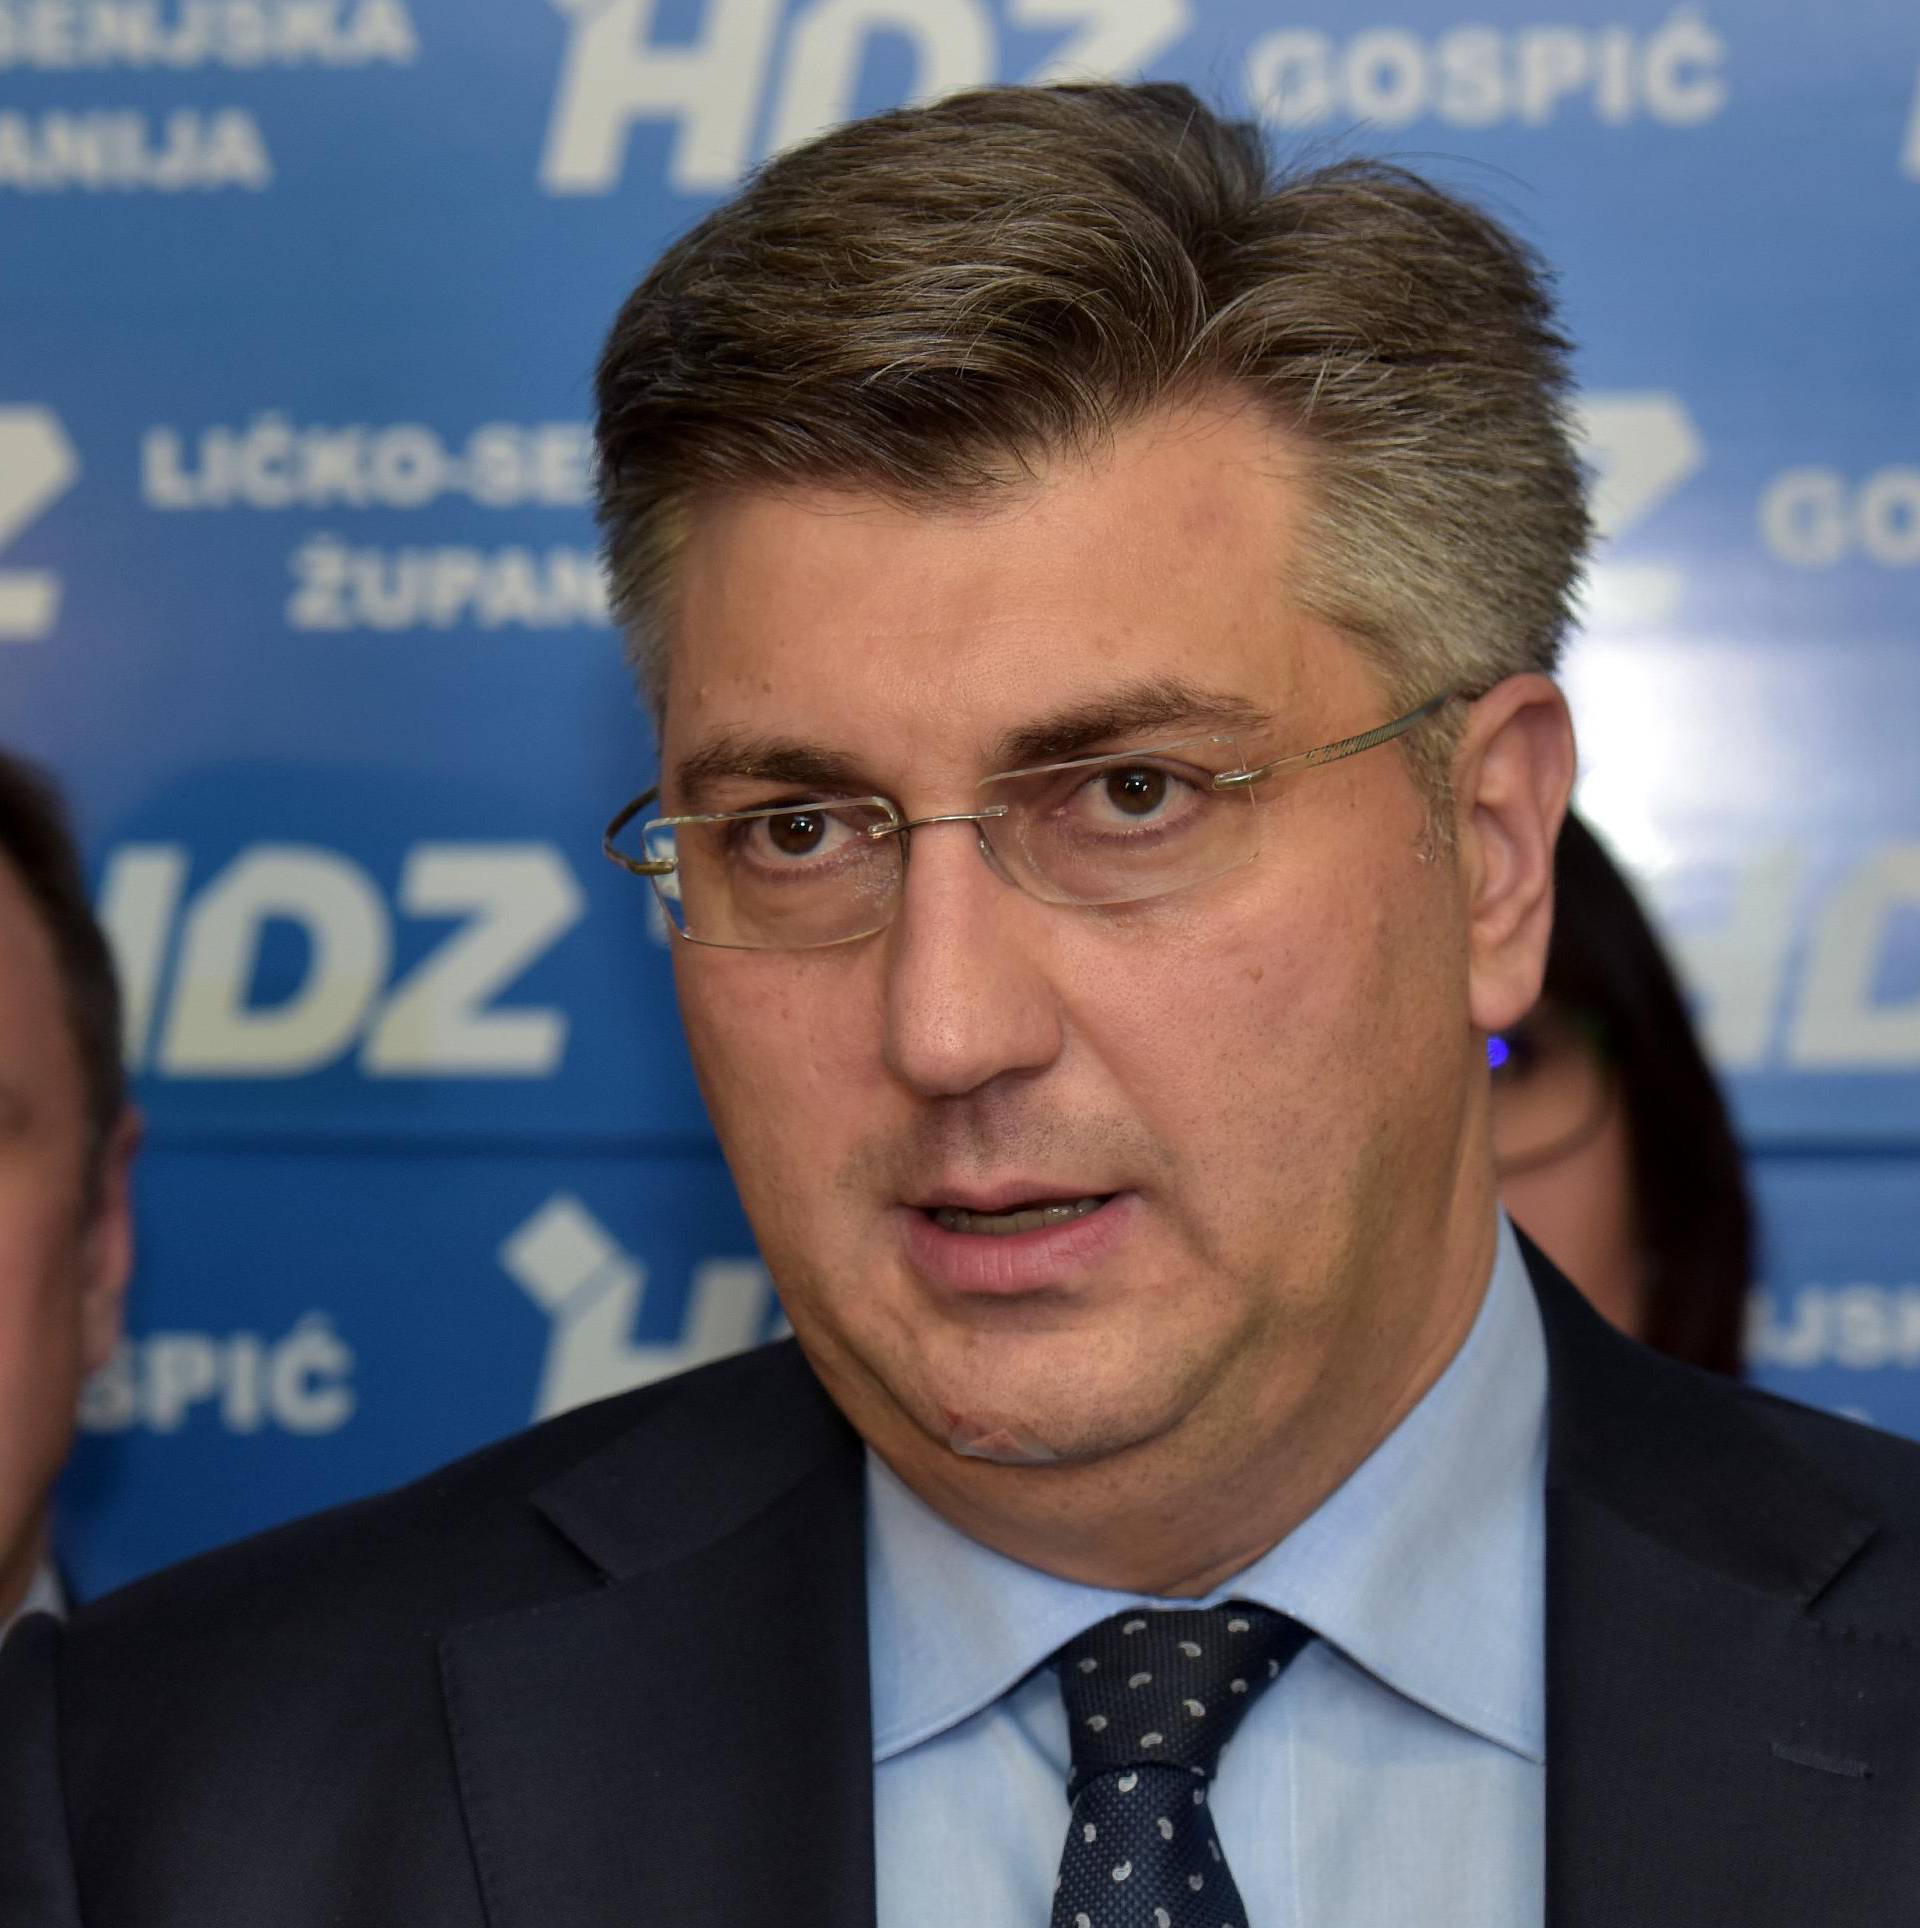 Premijer: Šavorić nije svoj ured ustupio HDZ-u nego agenciji...